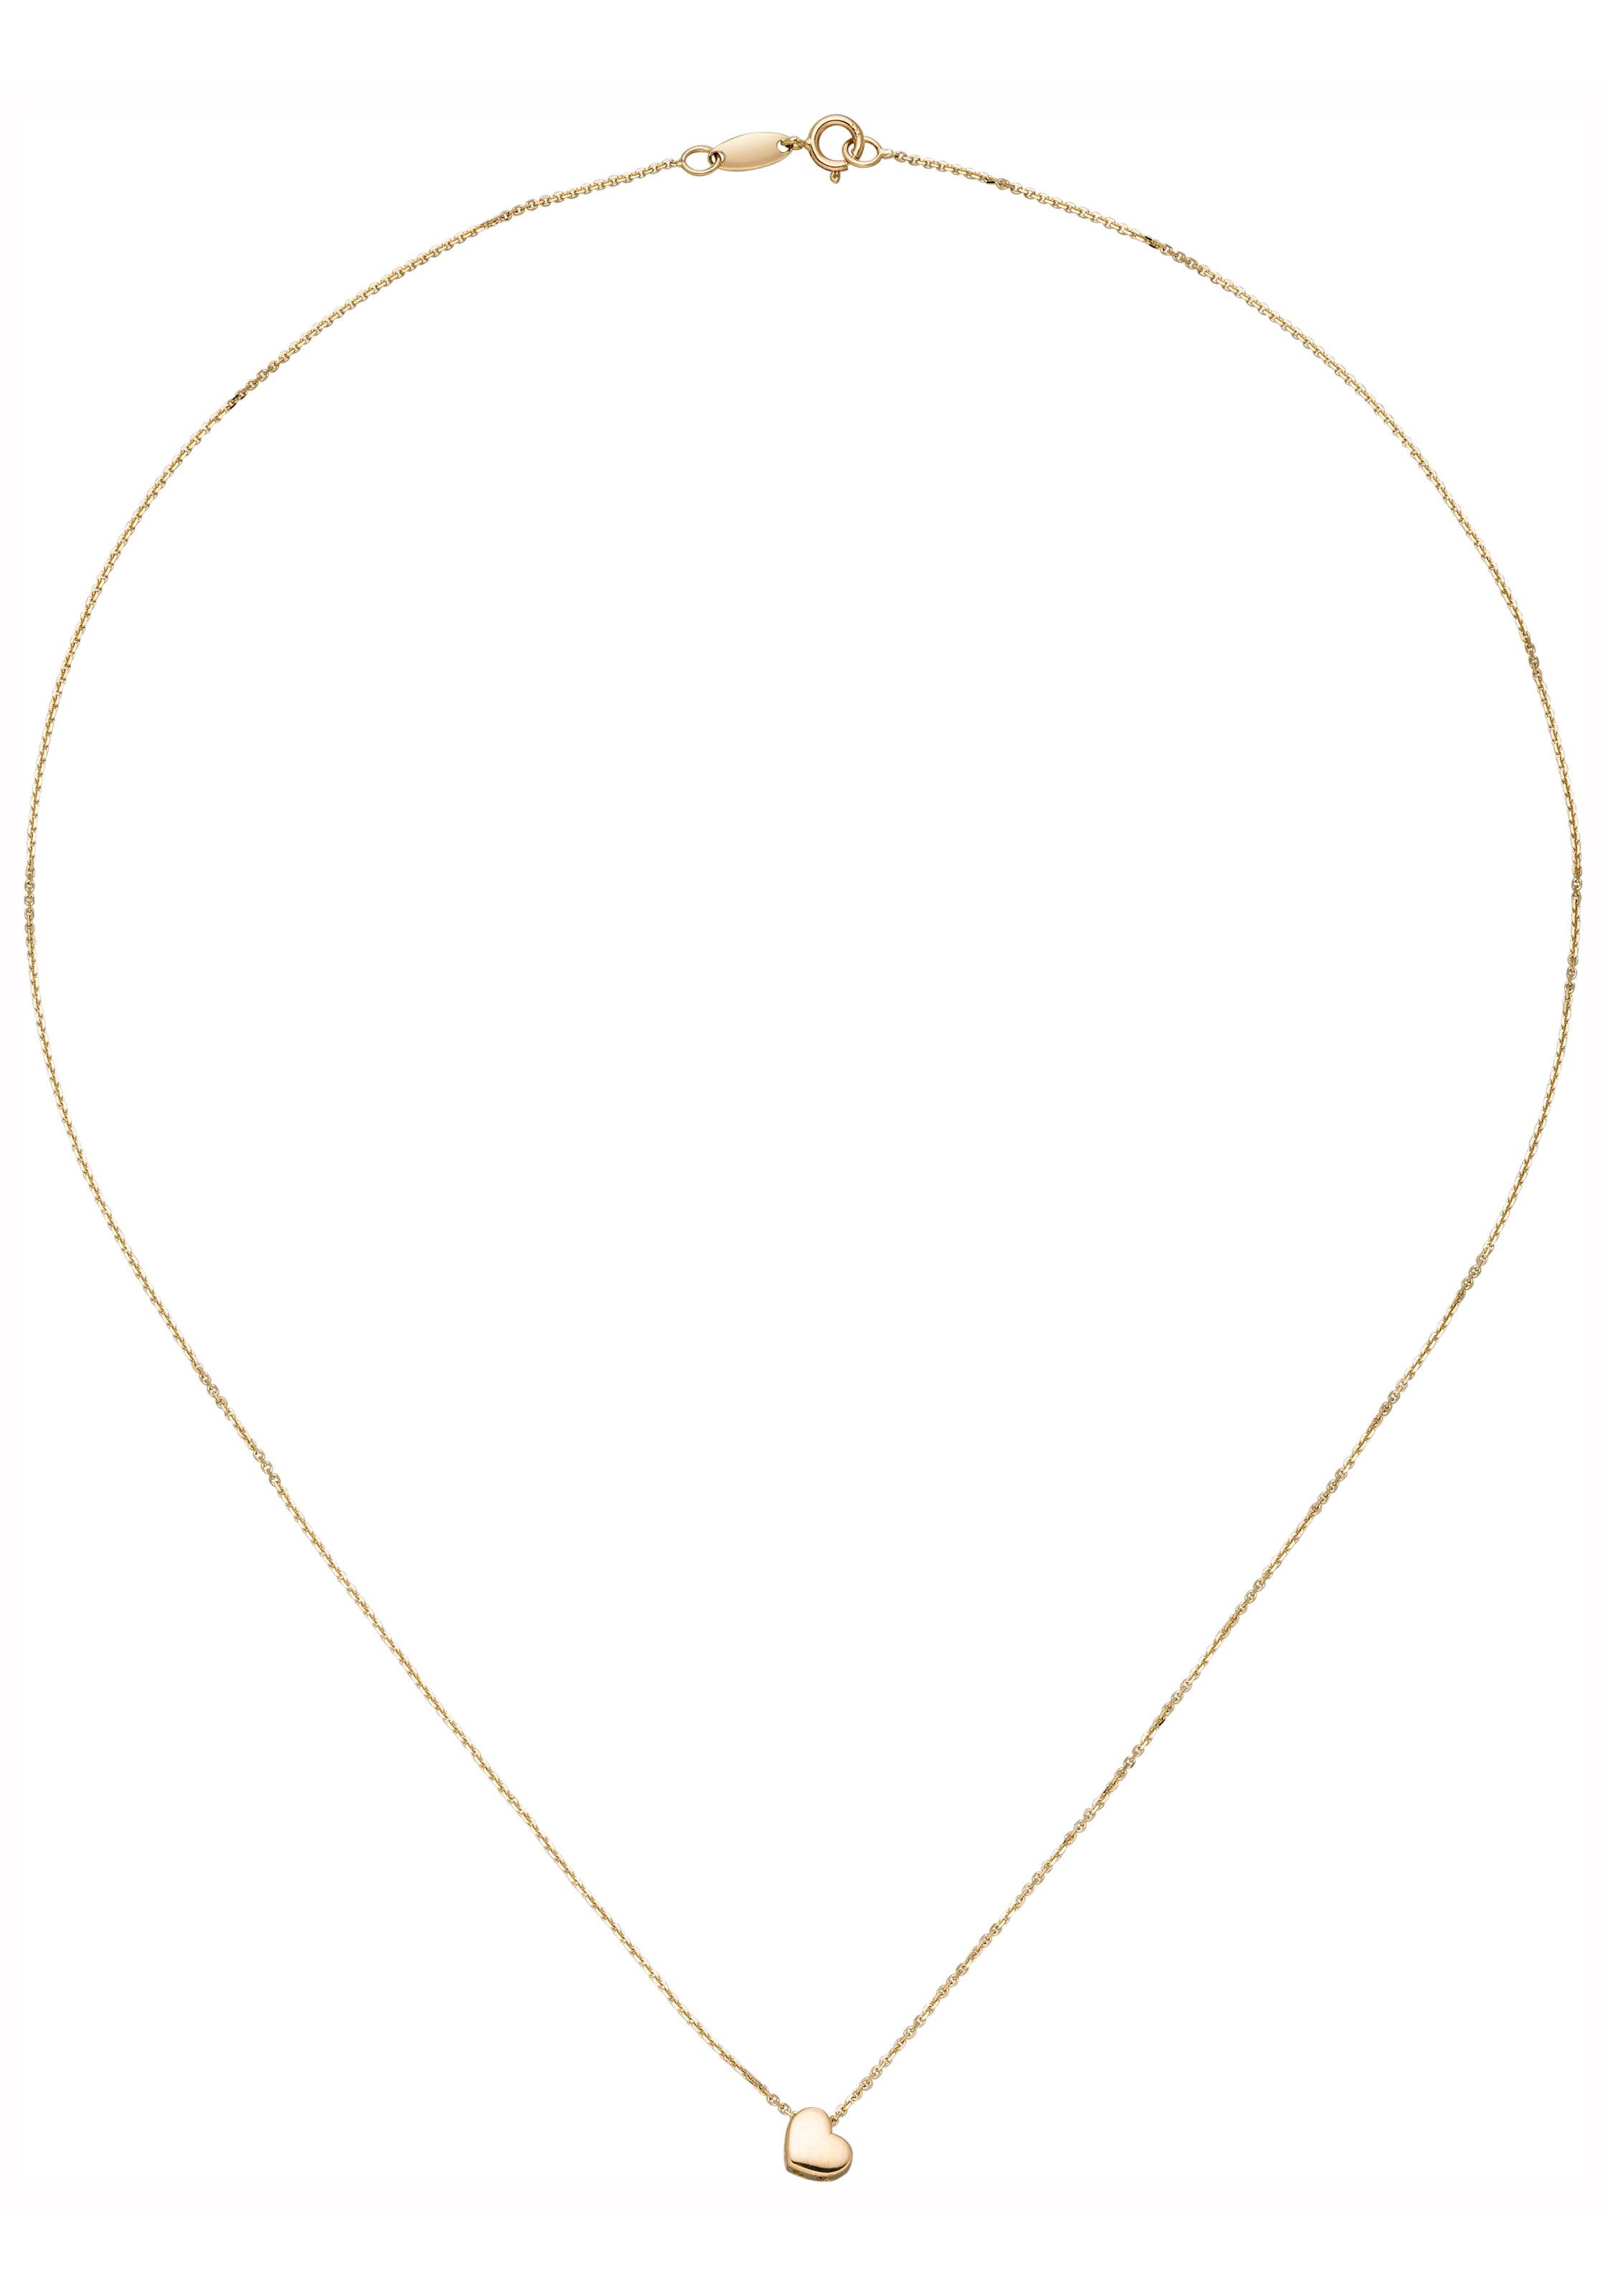 JOBO Kette mit Anhänger »Herz« 375 Gold 42 cm